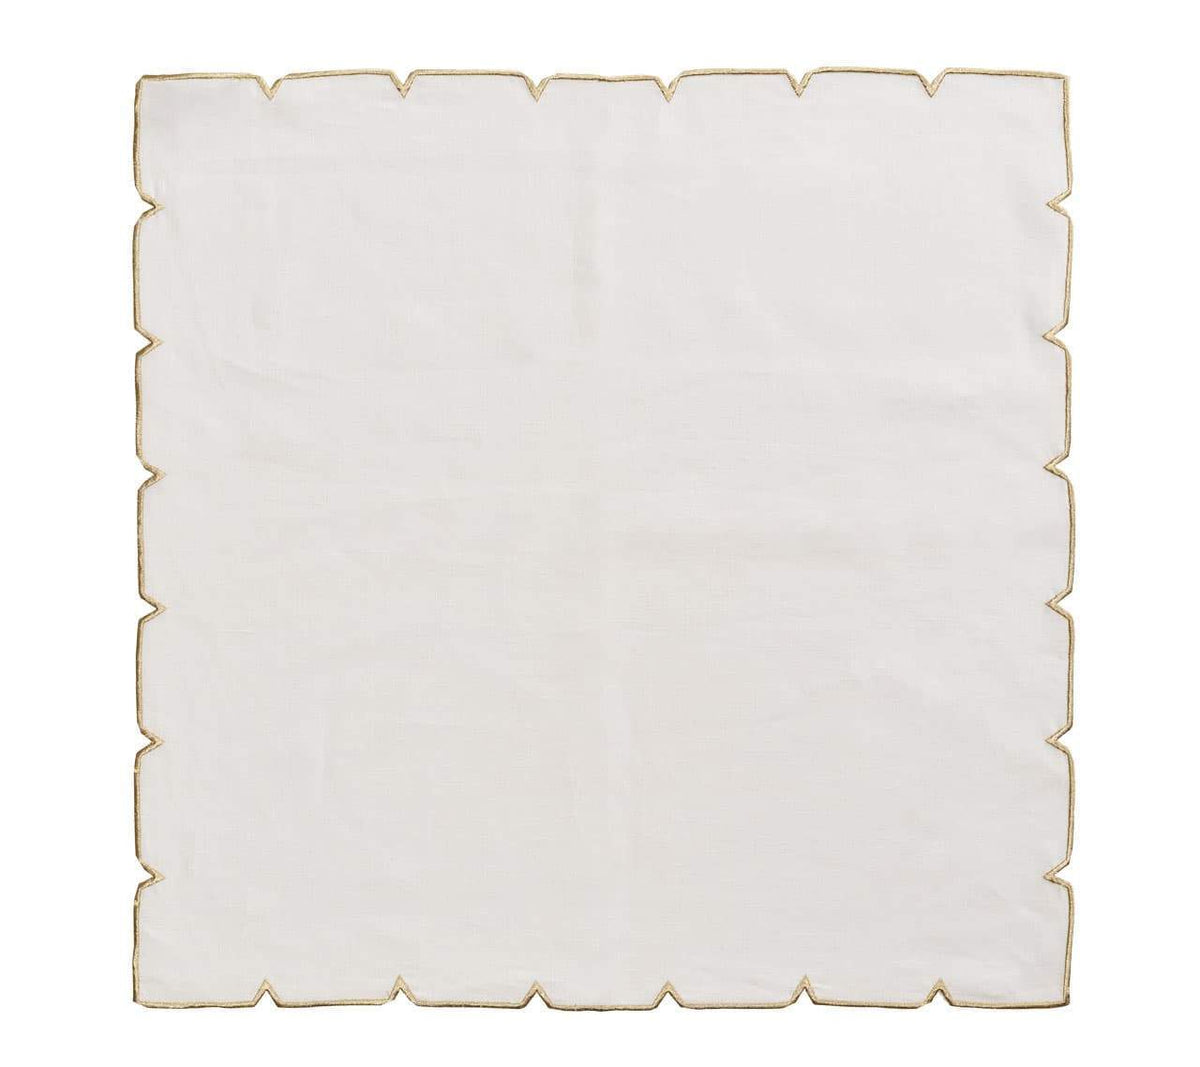 Divot Linen Napkin, Set of 4 - White and Gold